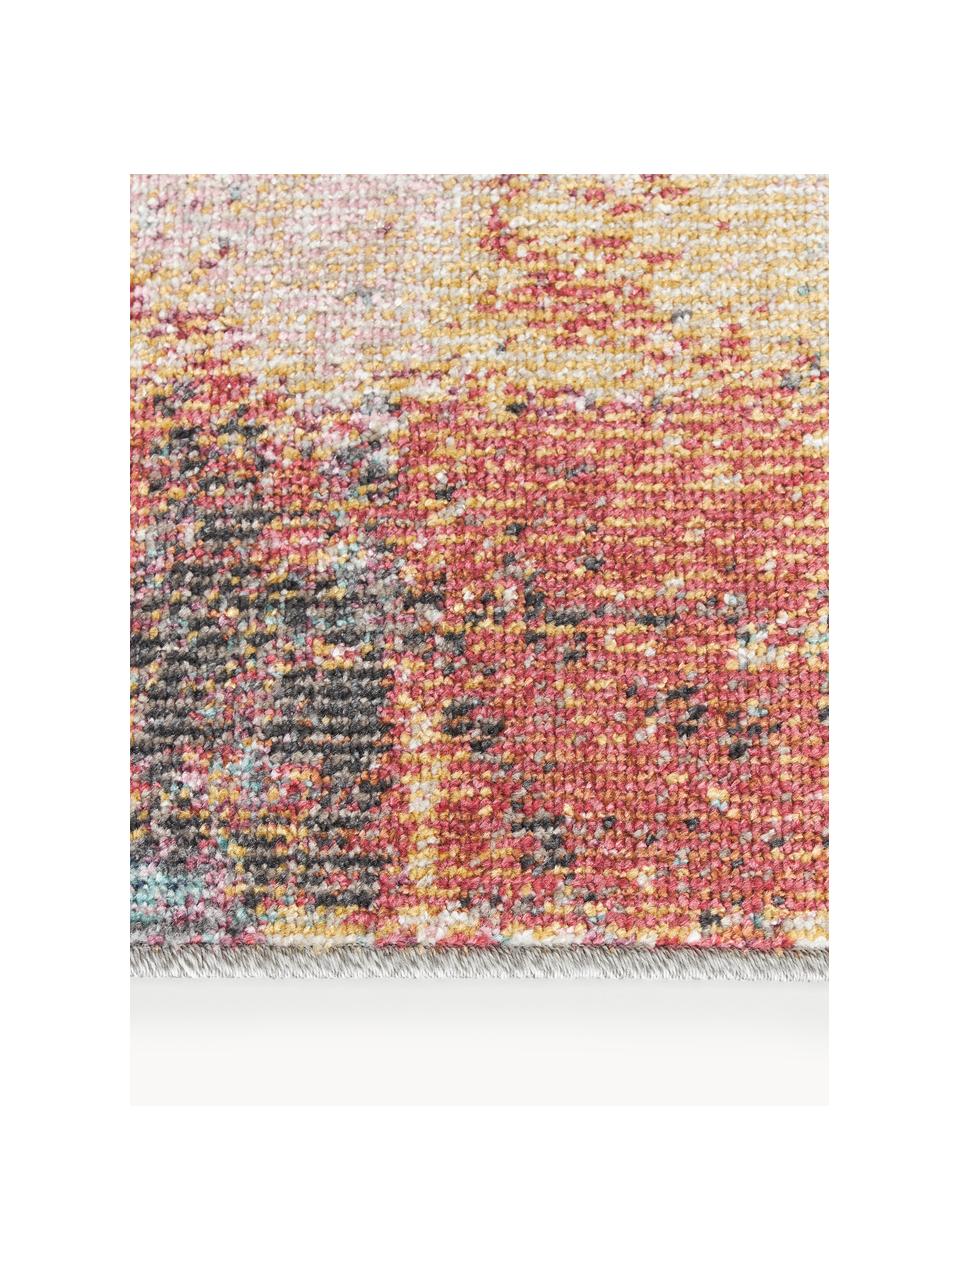 Interiérový/exteriérový koberec Paris, 100 % polypropylen

Materiál použitý v tomto produktu byl testován na škodlivé látky a certifikován podle STANDARD 100 od OEKO-TEX®, 21.HTR.82511, Hohenstein HTTI., Více barev, Š 80 cm, D 150 cm (velikost XS)